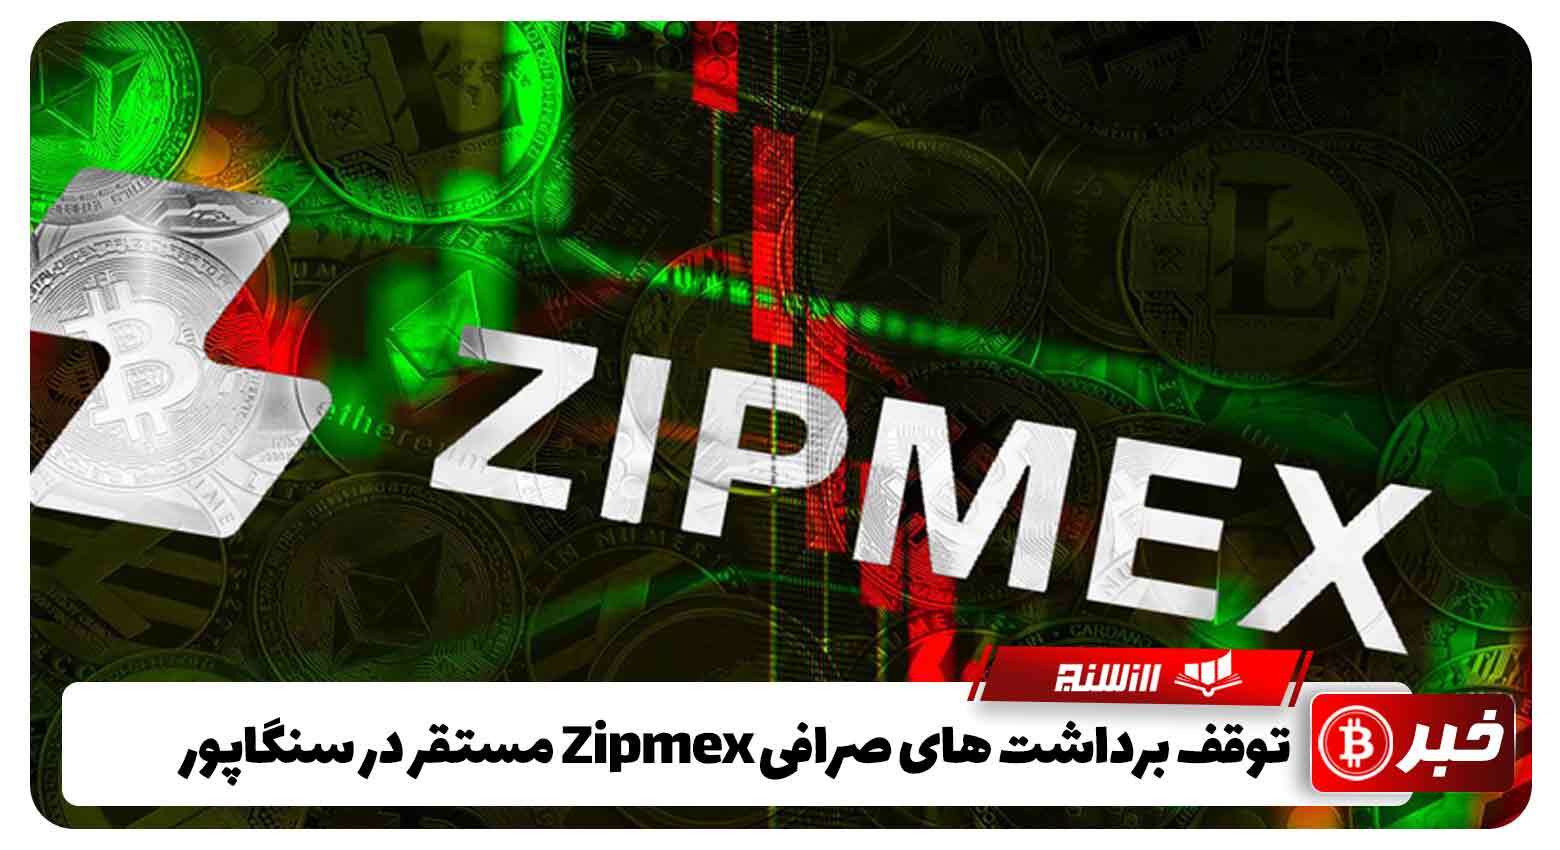 توقف برداشت های صرافی Zipmex مستقر در سنگاپور